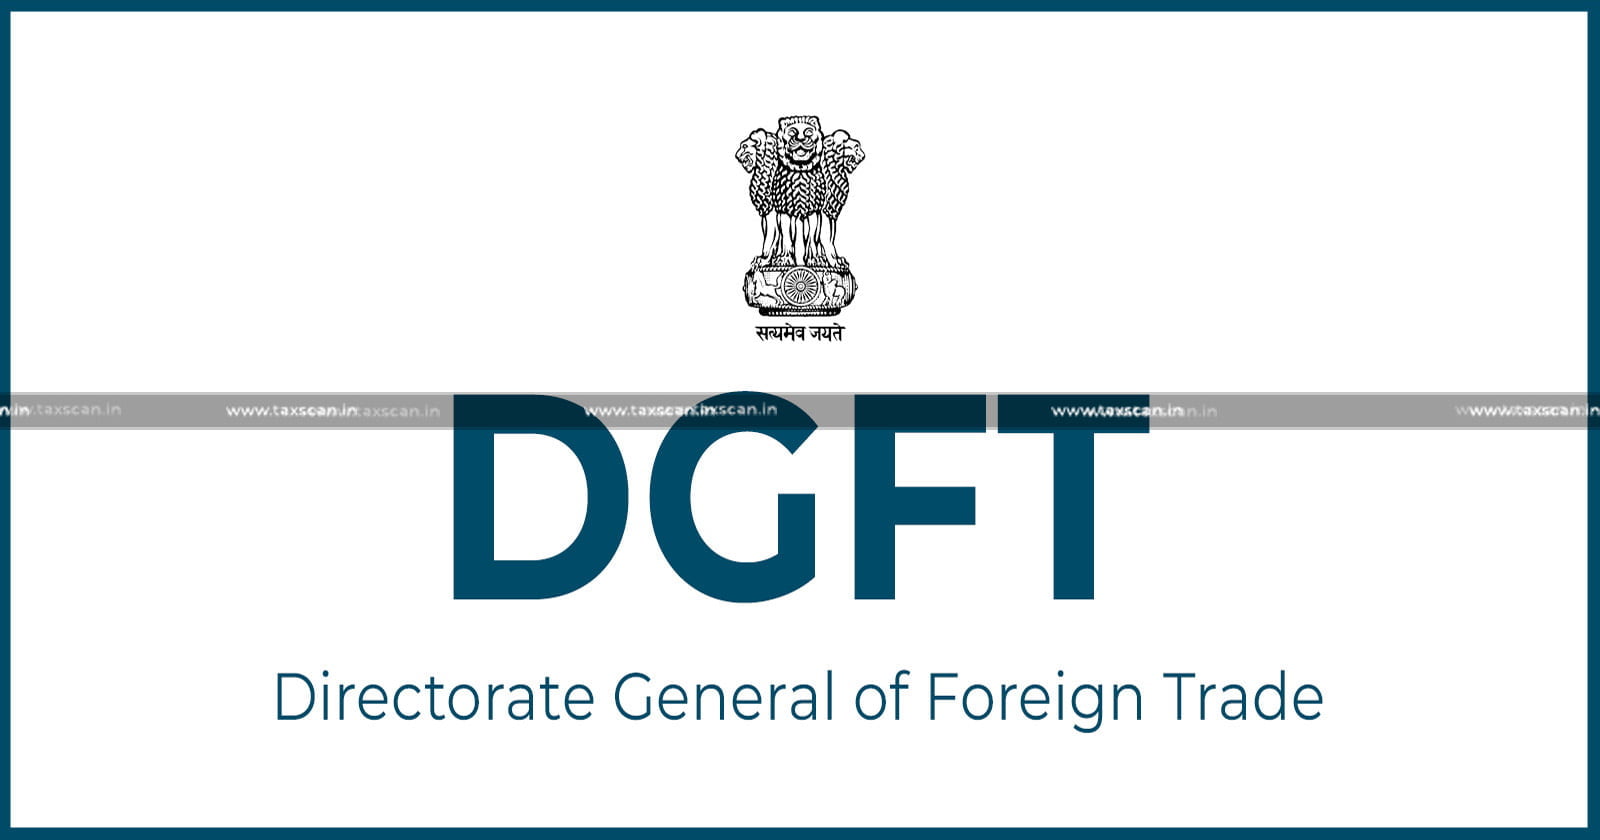 DGFT - Free - Permit - Import - Gold - Cover - valid - India - UAE - CEPA - TRQ - License - TAXSCAN